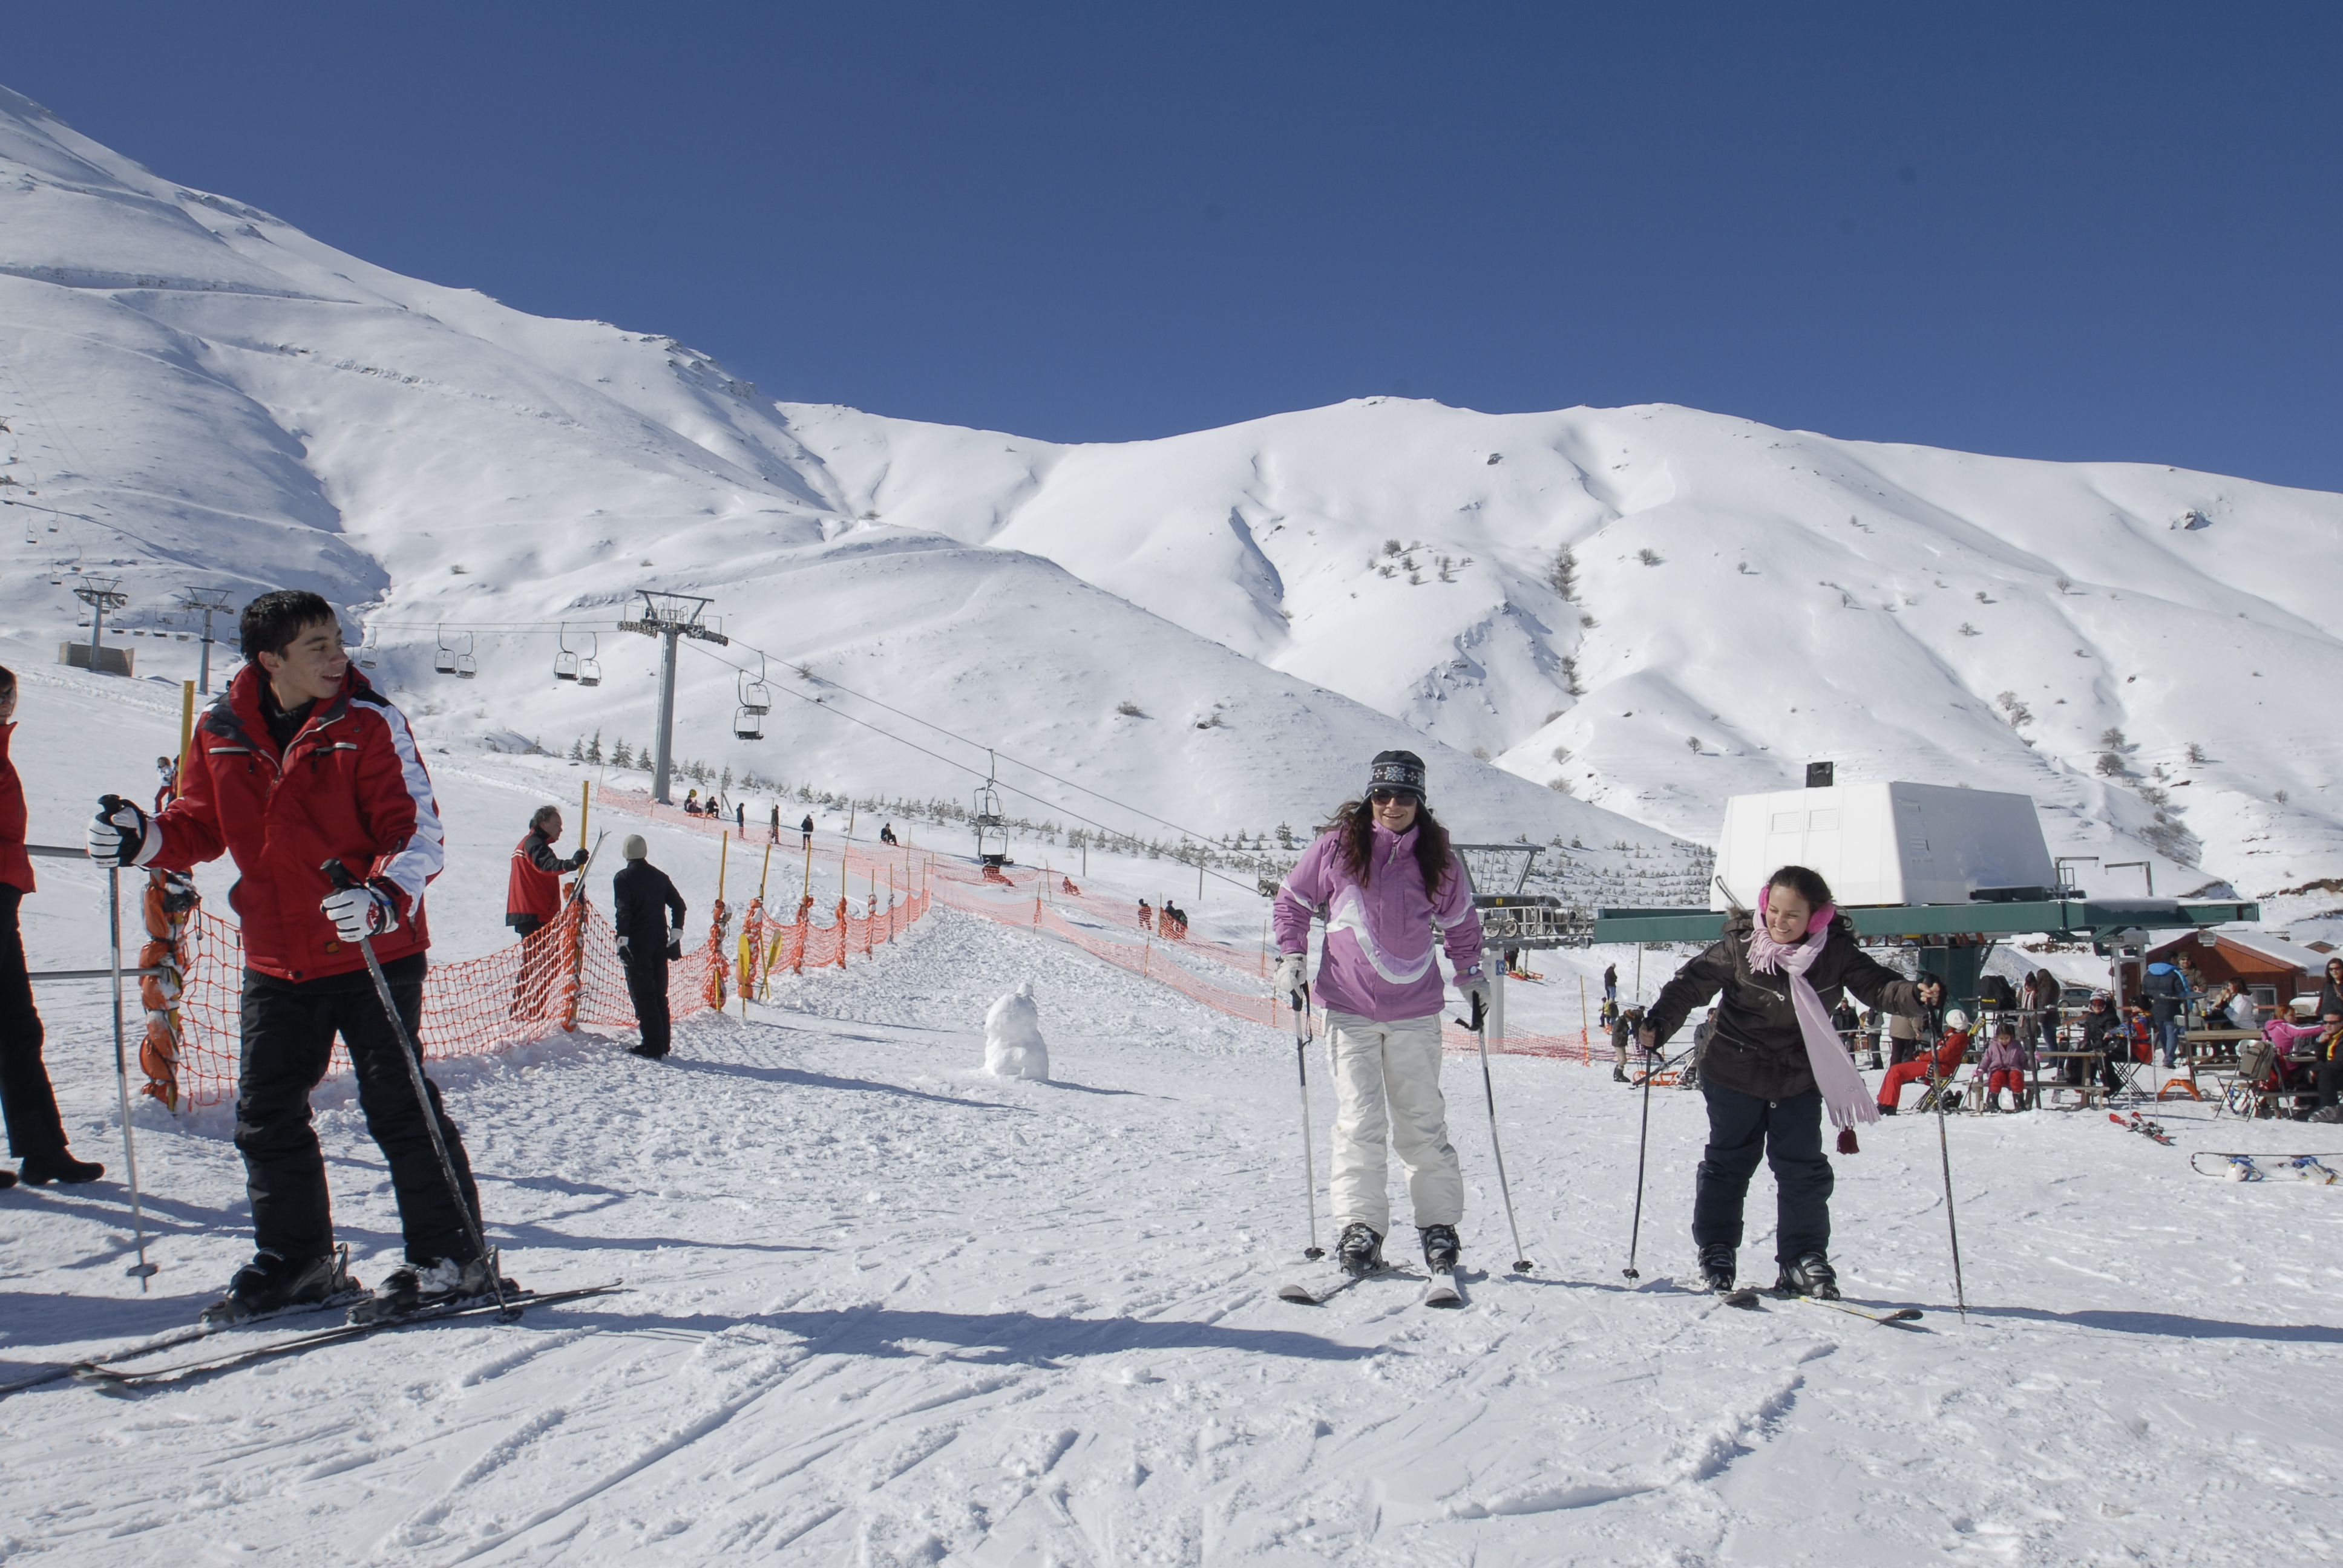 Bozdağ Kayak Merkezi 1988 yılından beri İzmir’e hizmet vermekte. Kışın 3 metreyi bulan kar kalınlığı ve modern pistleri ile ilgi çekmekte ve talep görmektedir. Özellikle Aralık ve Mart ayları arasında kullanıma uygun olan Bozdağ Kayak Merkezi, sizin için en ideal kayak hizmetini karşılamaktadır.